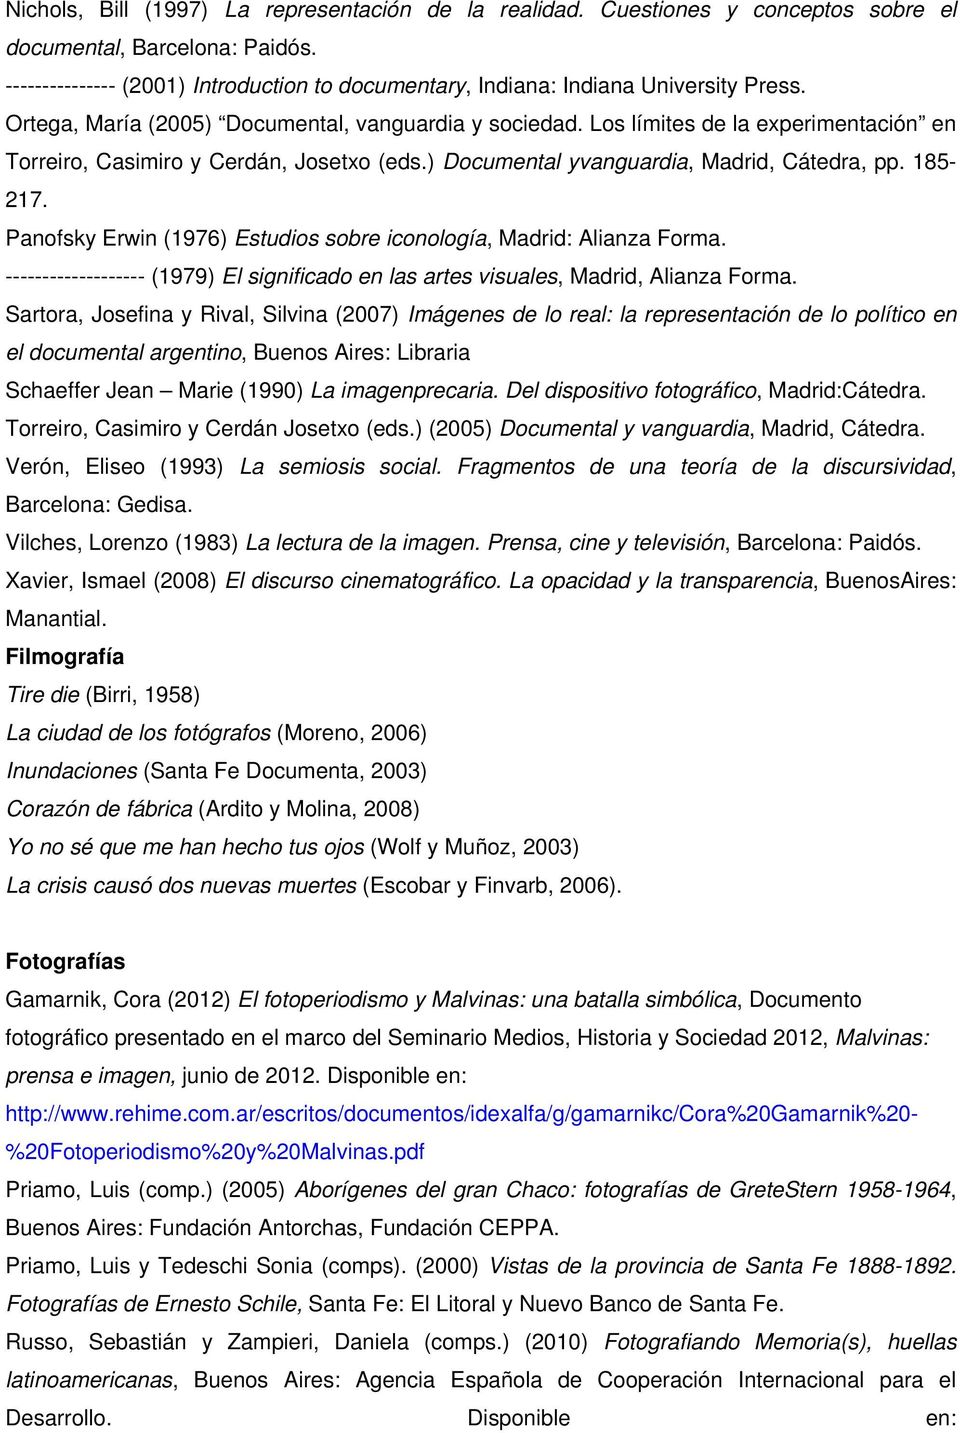 Los límites de la experimentación en Torreiro, Casimiro y Cerdán, Josetxo (eds.) Documental yvanguardia, Madrid, Cátedra, pp. 185-217.